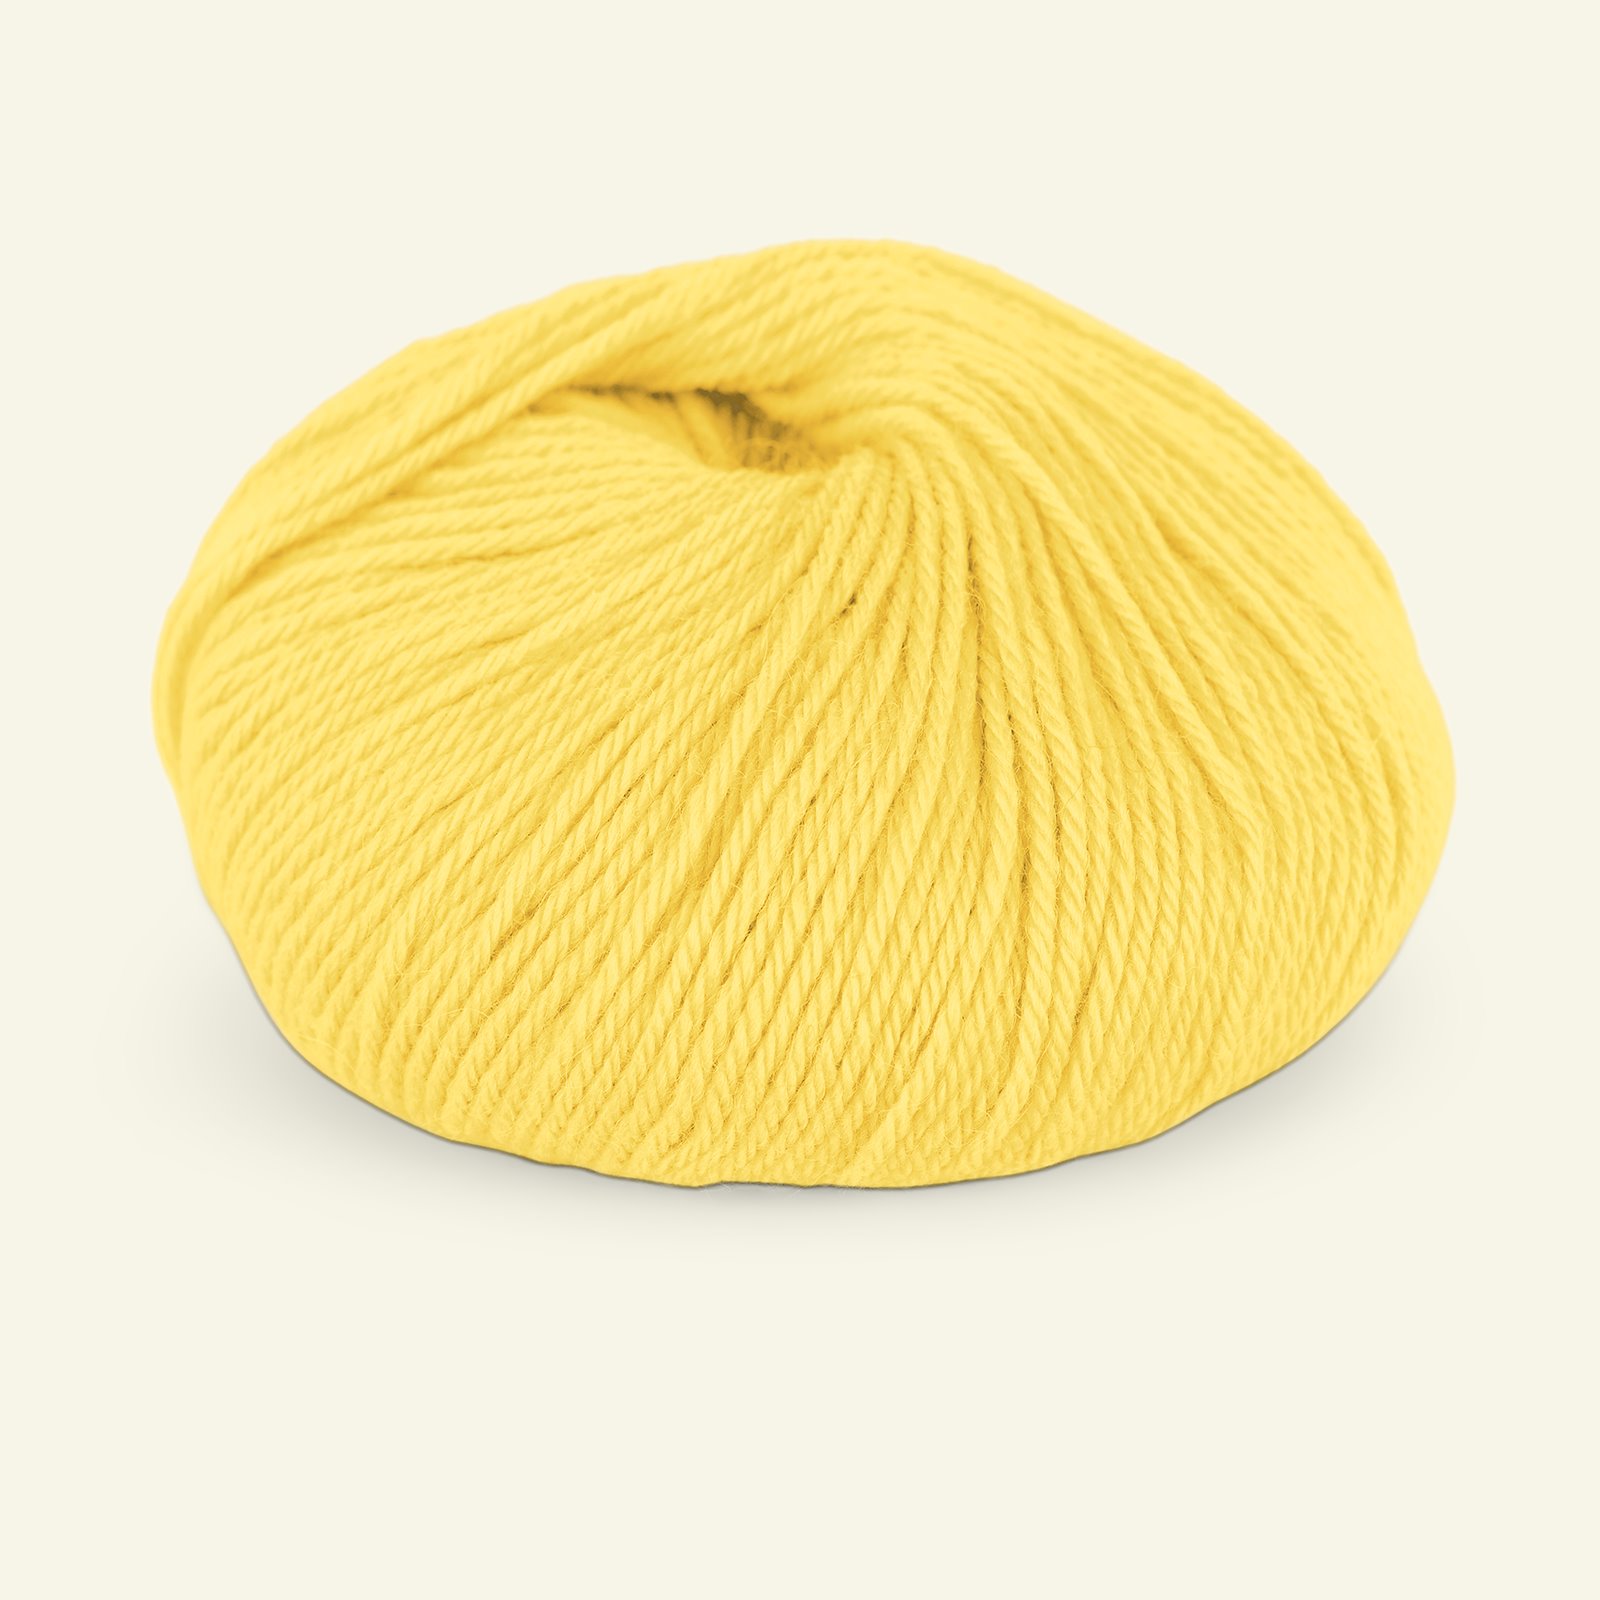 Du Store Alpakka, alpaca merino mixed yarn "Sterk", yellow (914) 90000706_pack_b